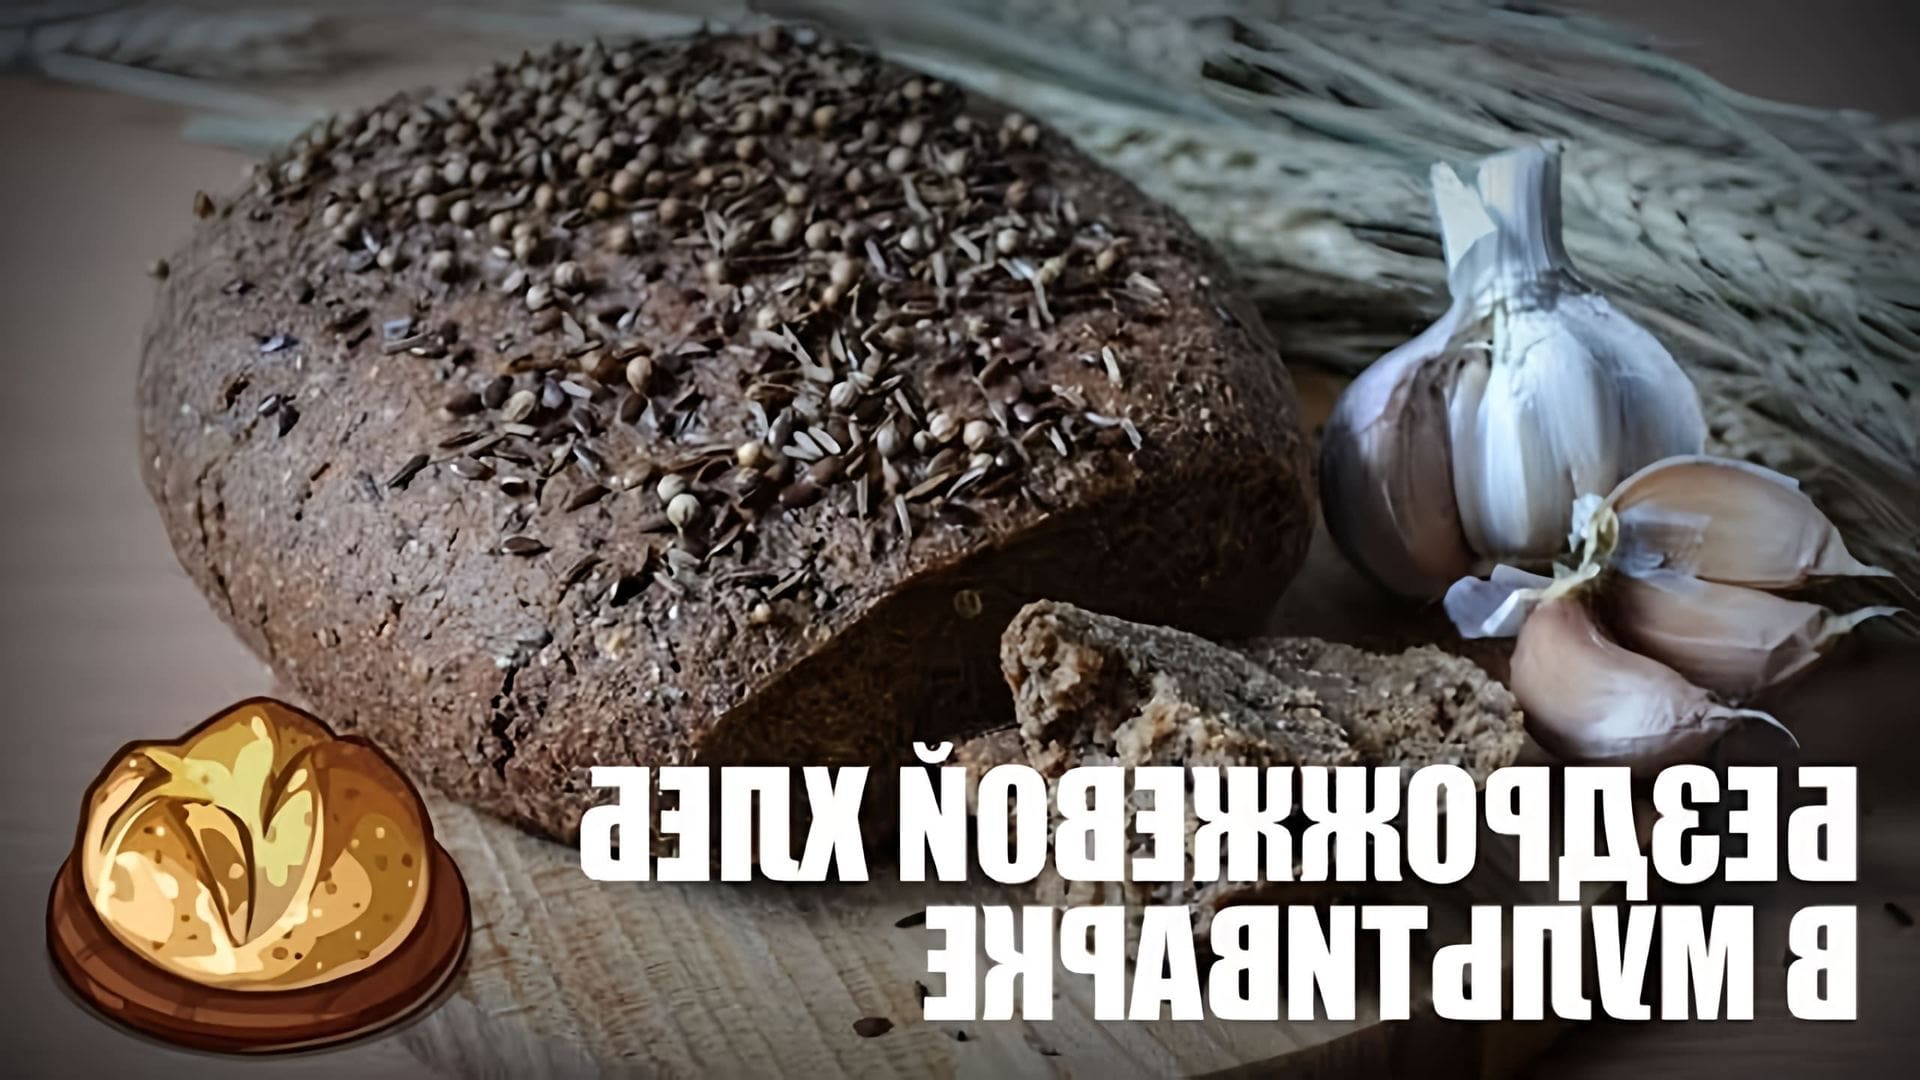 В данном видео демонстрируется рецепт приготовления бездрожжевого хлеба в мультиварке